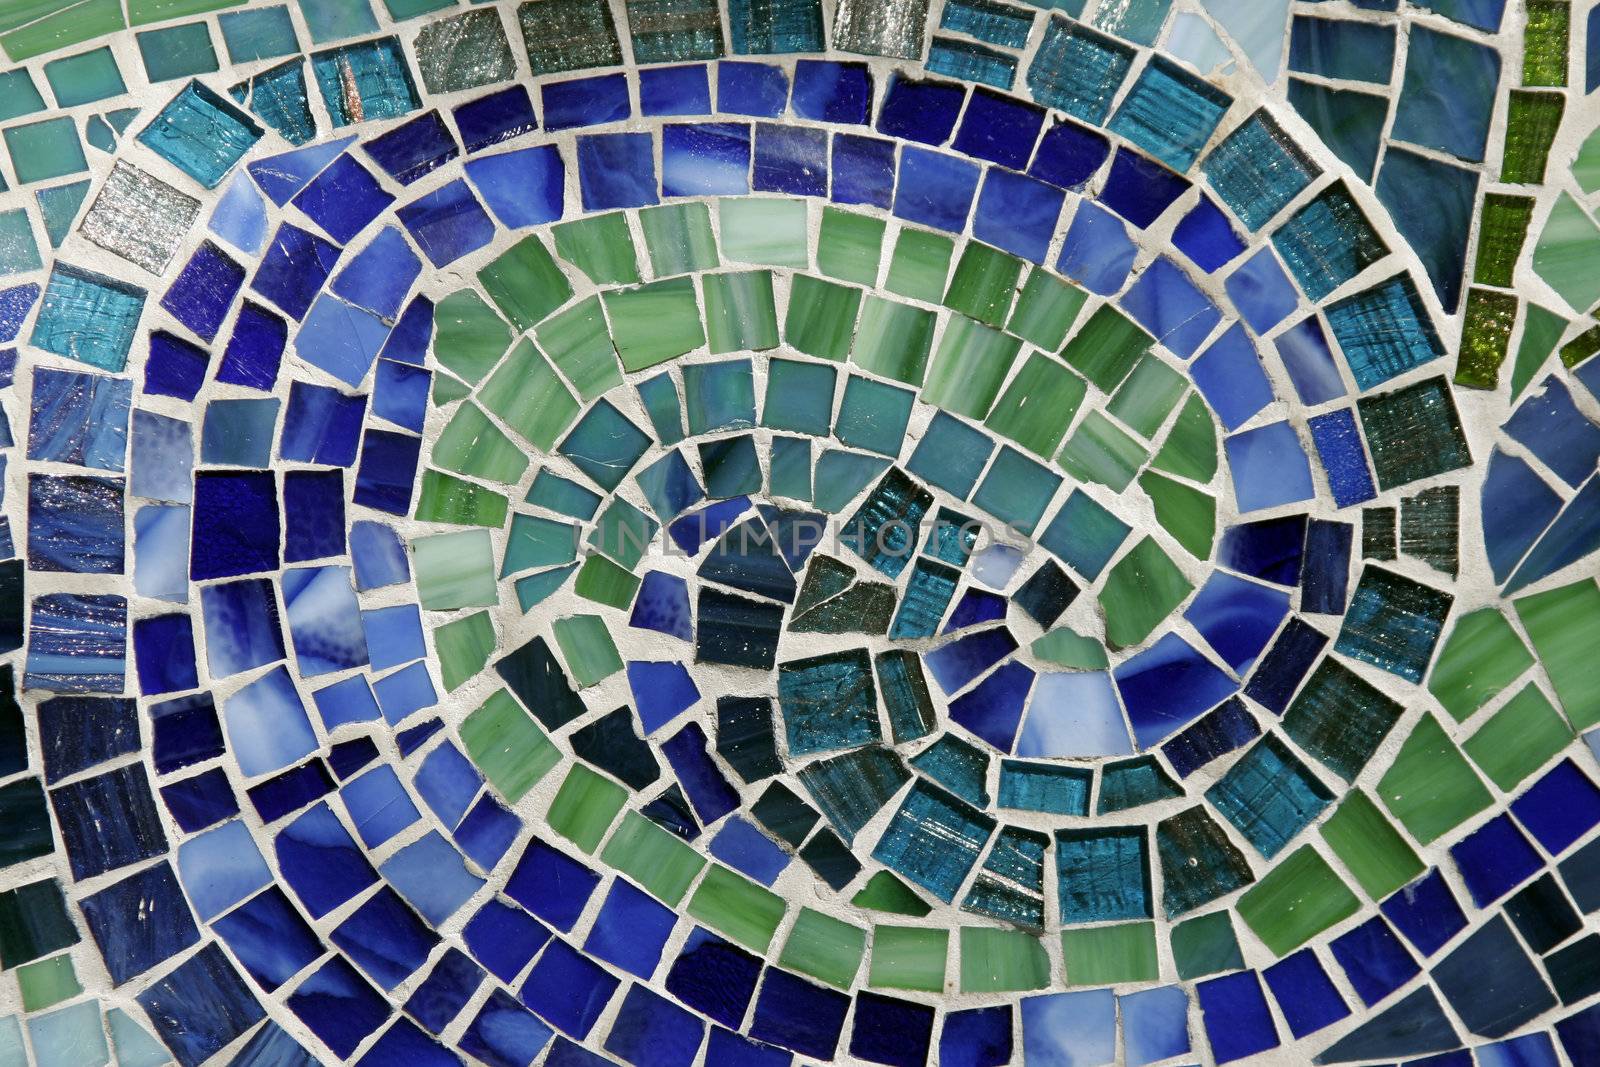 Mosaic Background by thorsten